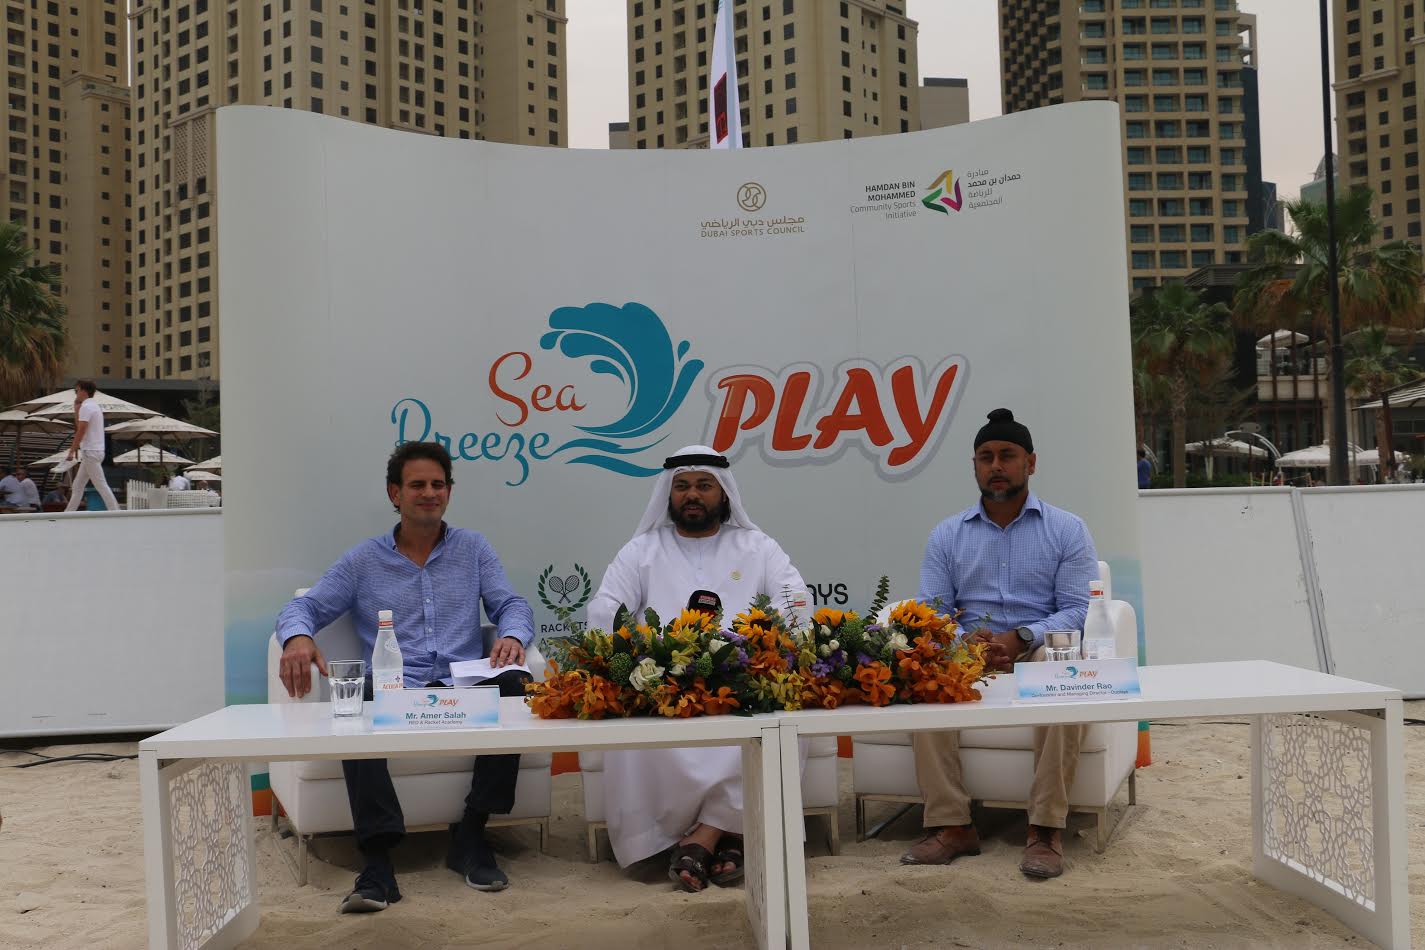 ملاعب سي بريز بلاي أحدث منشأة رياضية شاطئية في دبي